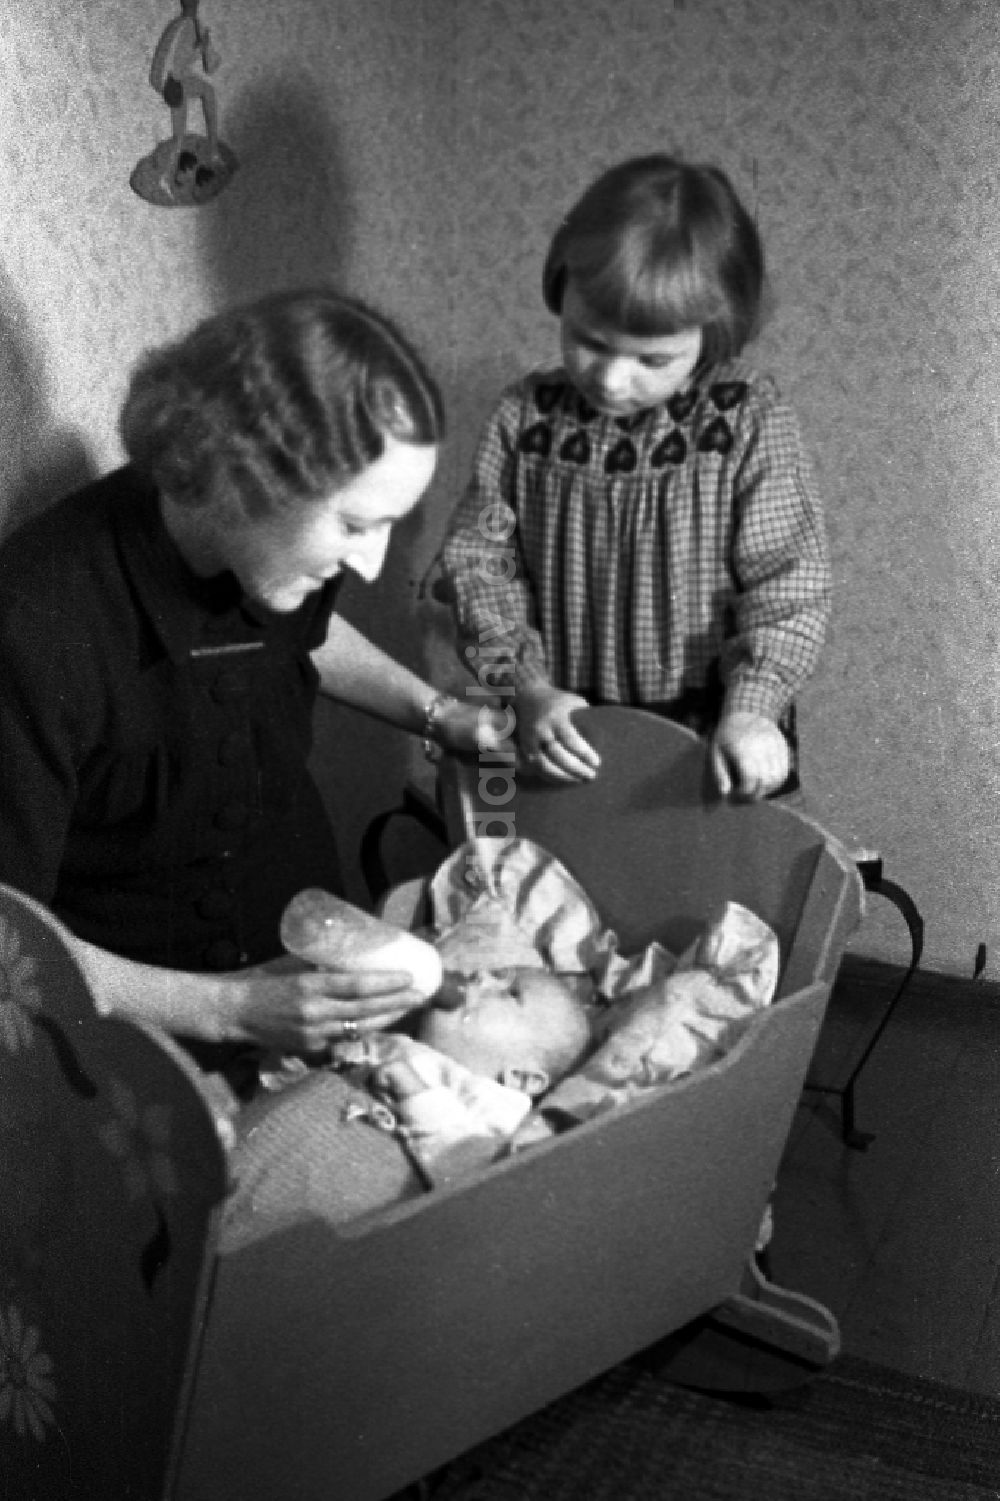 DDR-Bildarchiv: Merseburg - Eine Mutter gibt ihrem Baby in der Wiege die Nuckelflasche in Merseburg in Sachsen-Anhalt in der DDR